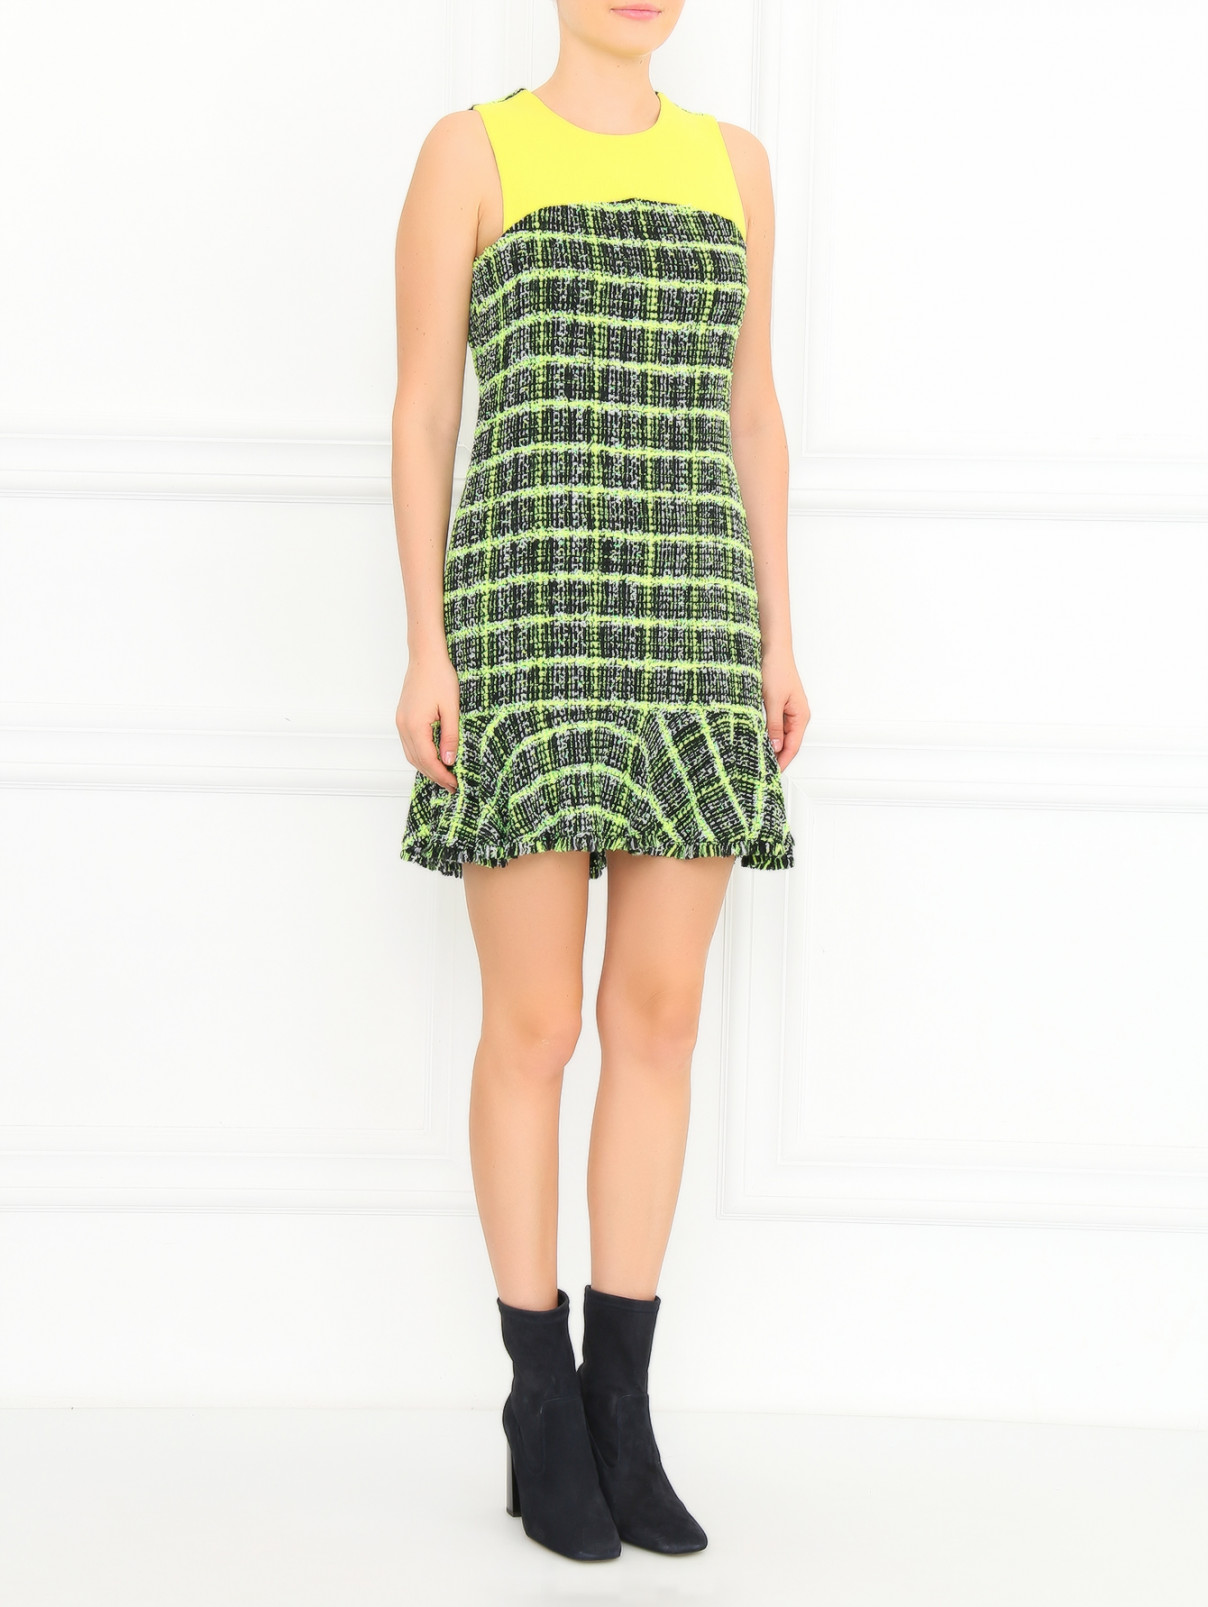 Платье с узором Moschino Cheap&Chic  –  Модель Общий вид  – Цвет:  Зеленый